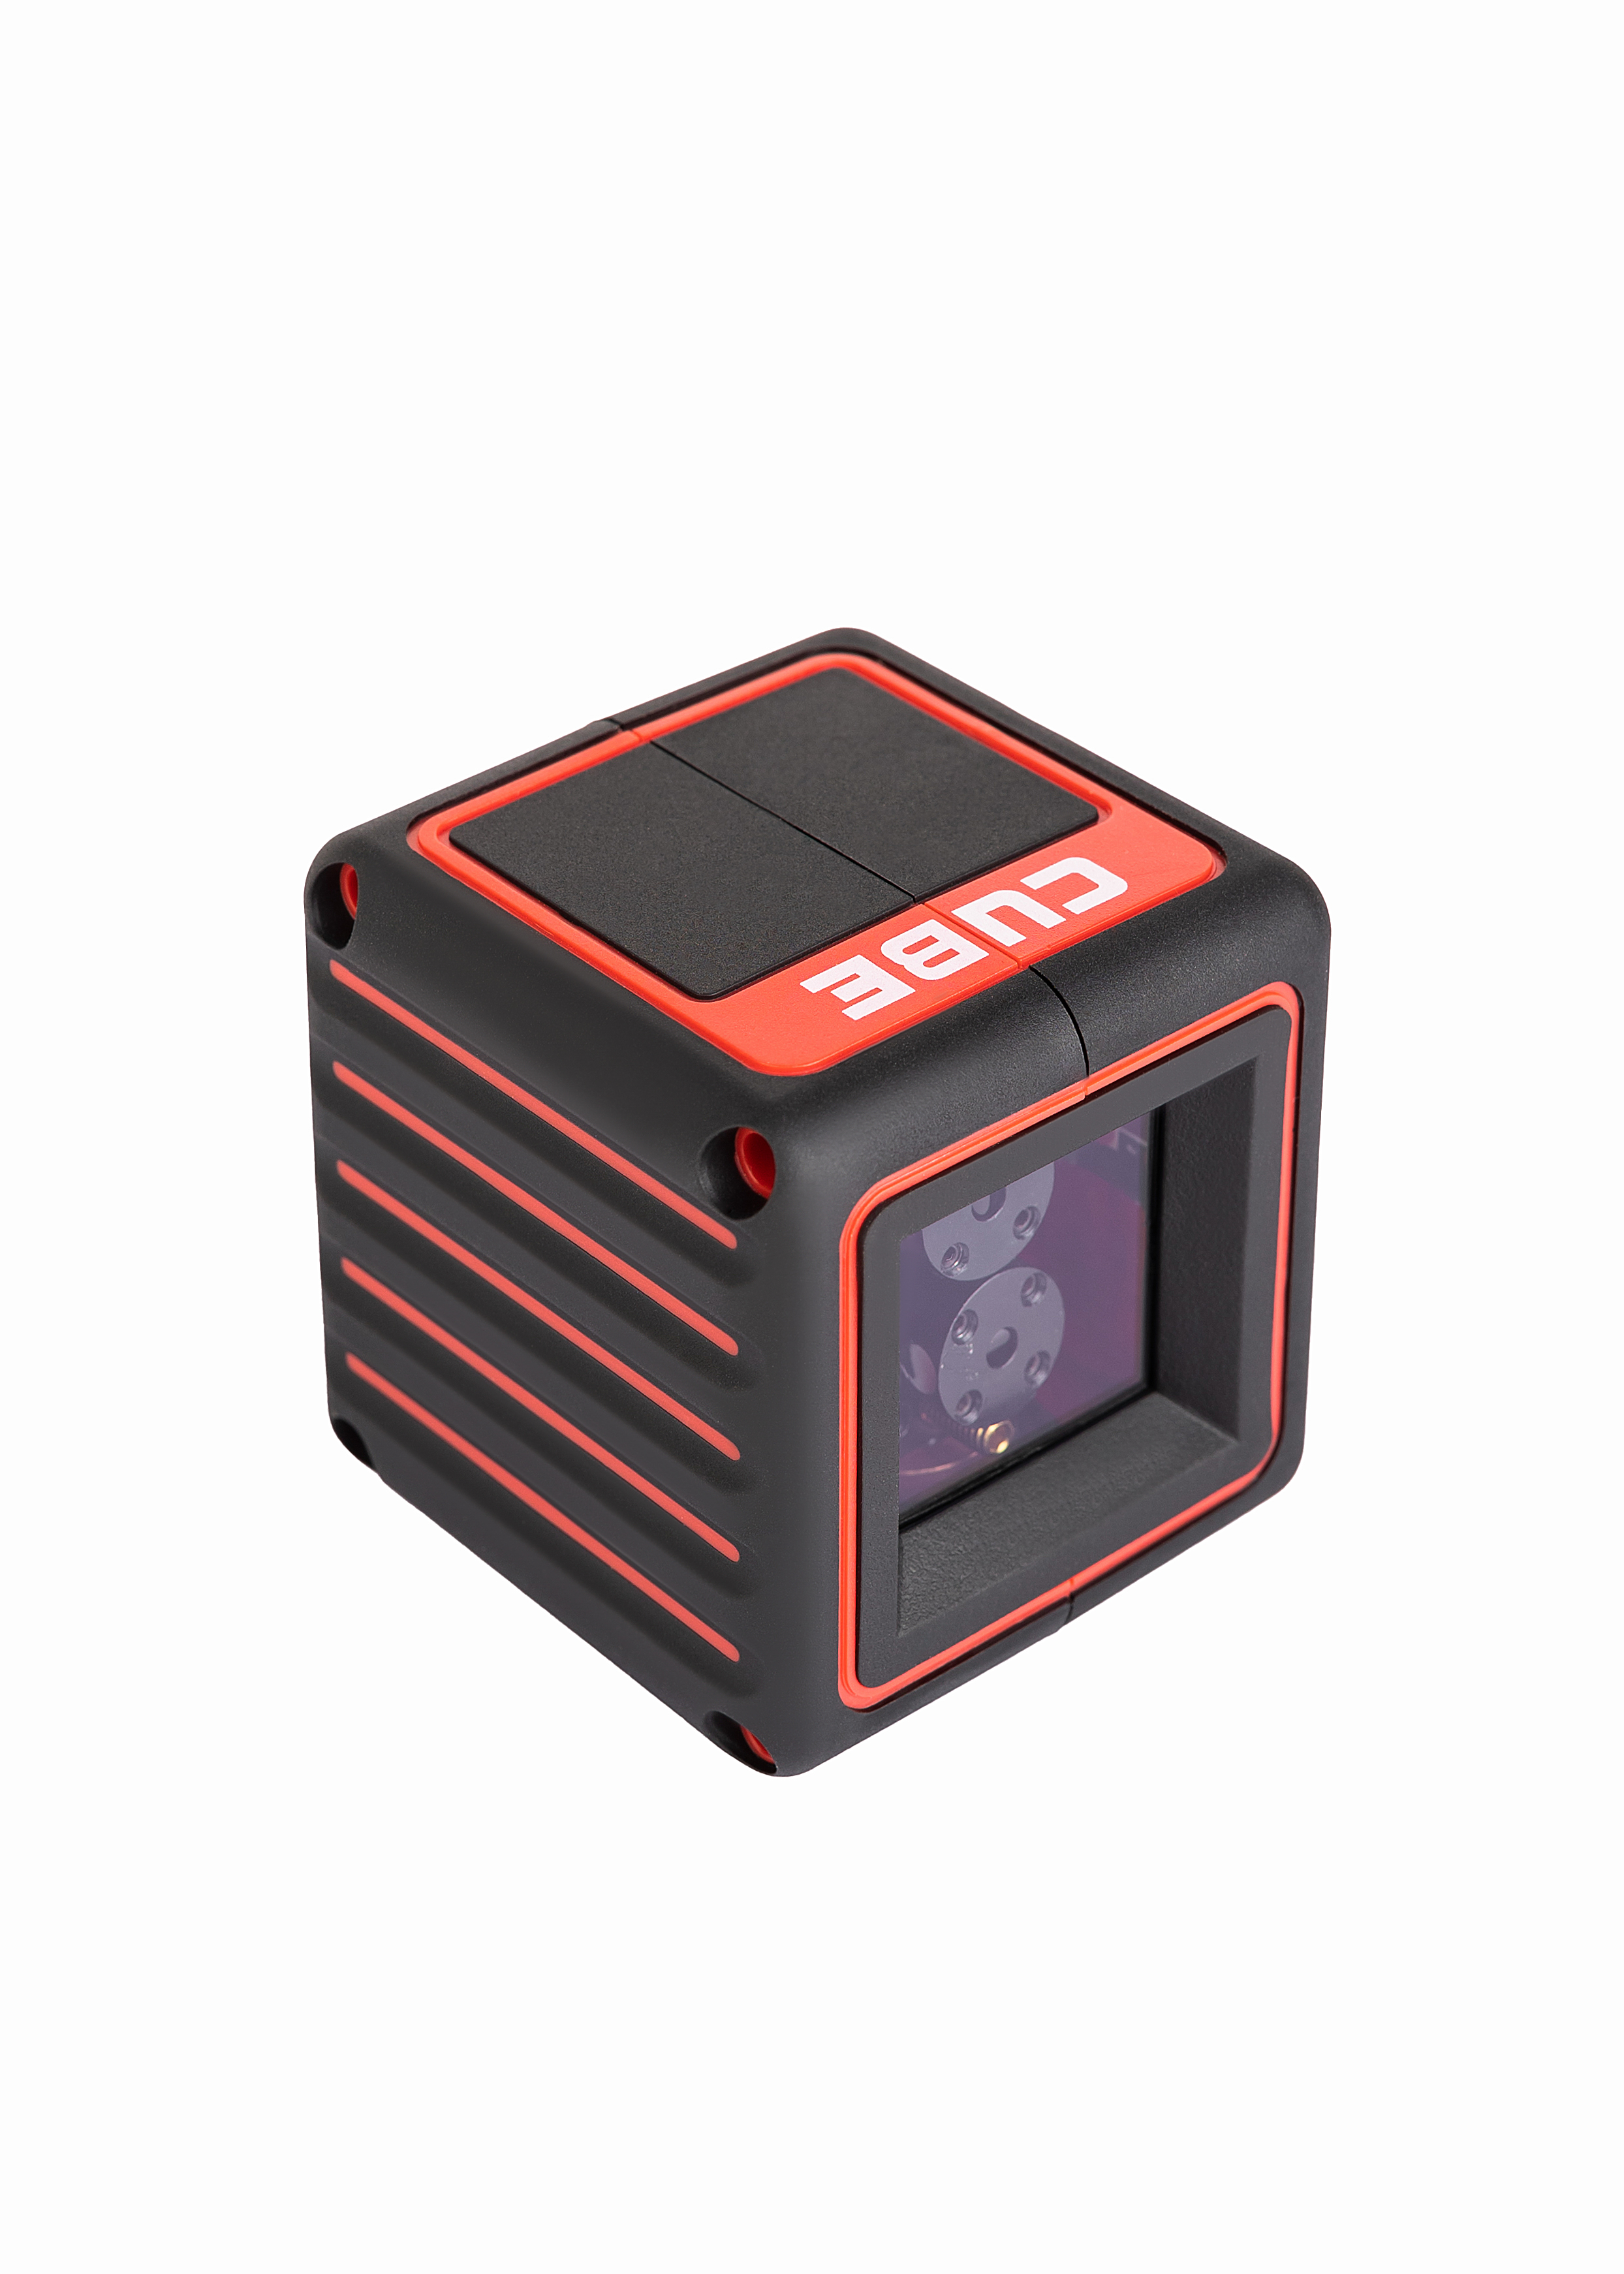 Лазерный уровень cube basic edition. Лазерный уровень ada Cube Basic Edition а00341. Cube 3d лазерный уровень. Ada Cube 3d professional Edition лазерный уровень. Ada Cube Home Edition.